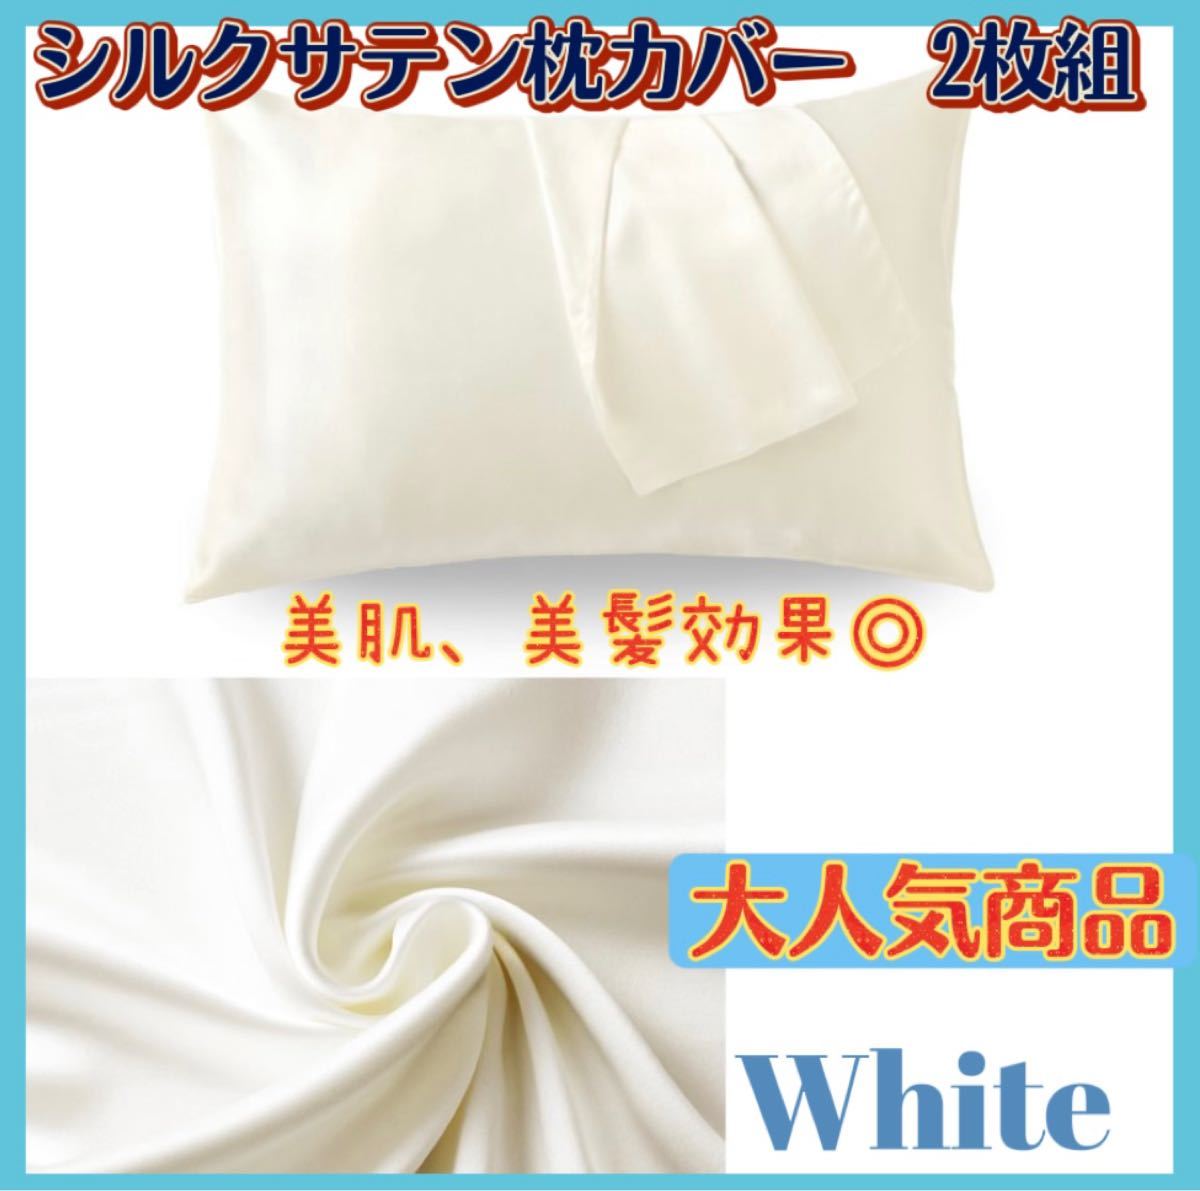 新品・未使用 シルクサテン 枕カバー 2枚セット ホワイト 美肌 美髪 通気性